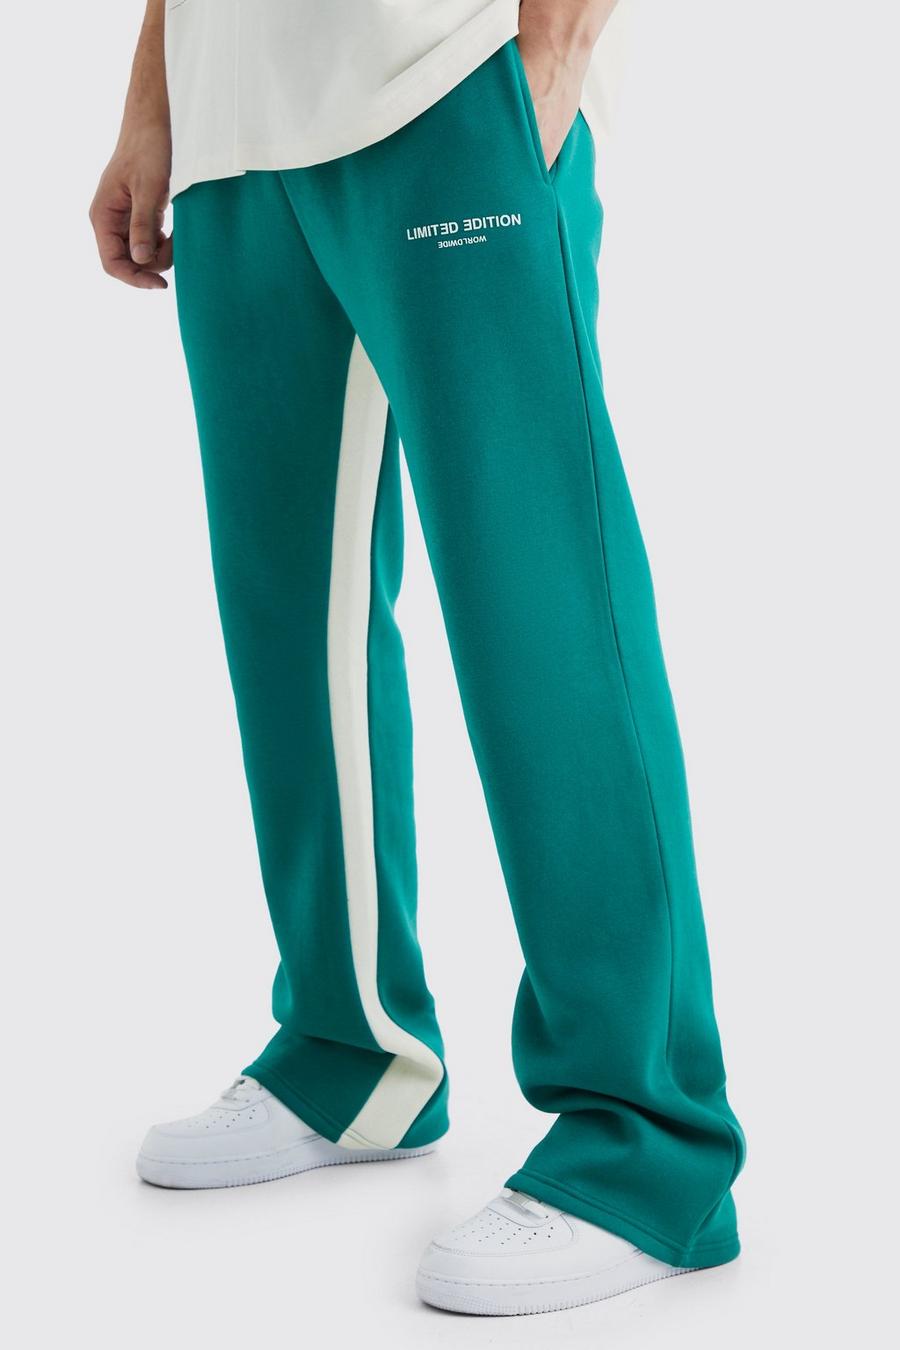 Pantaloni tuta Tall Regular Fit Limited con inserti, Forest